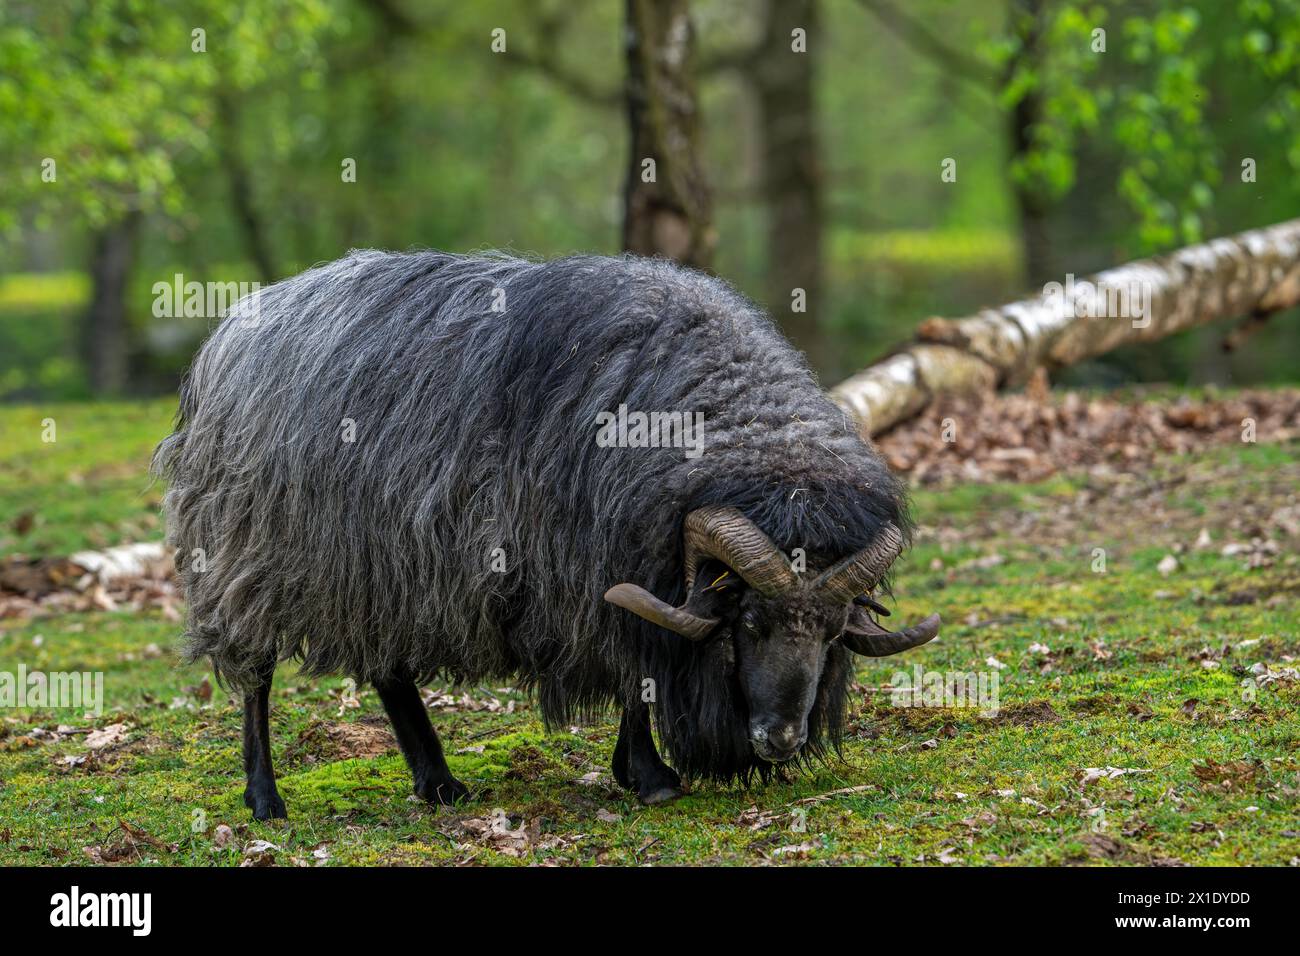 Lüneburger Heidschnucke / German Grey Heath ram, razza di pecore brughiera nera a coda corta dell'Europa settentrionale con corna ricciolate della Germania settentrionale Foto Stock